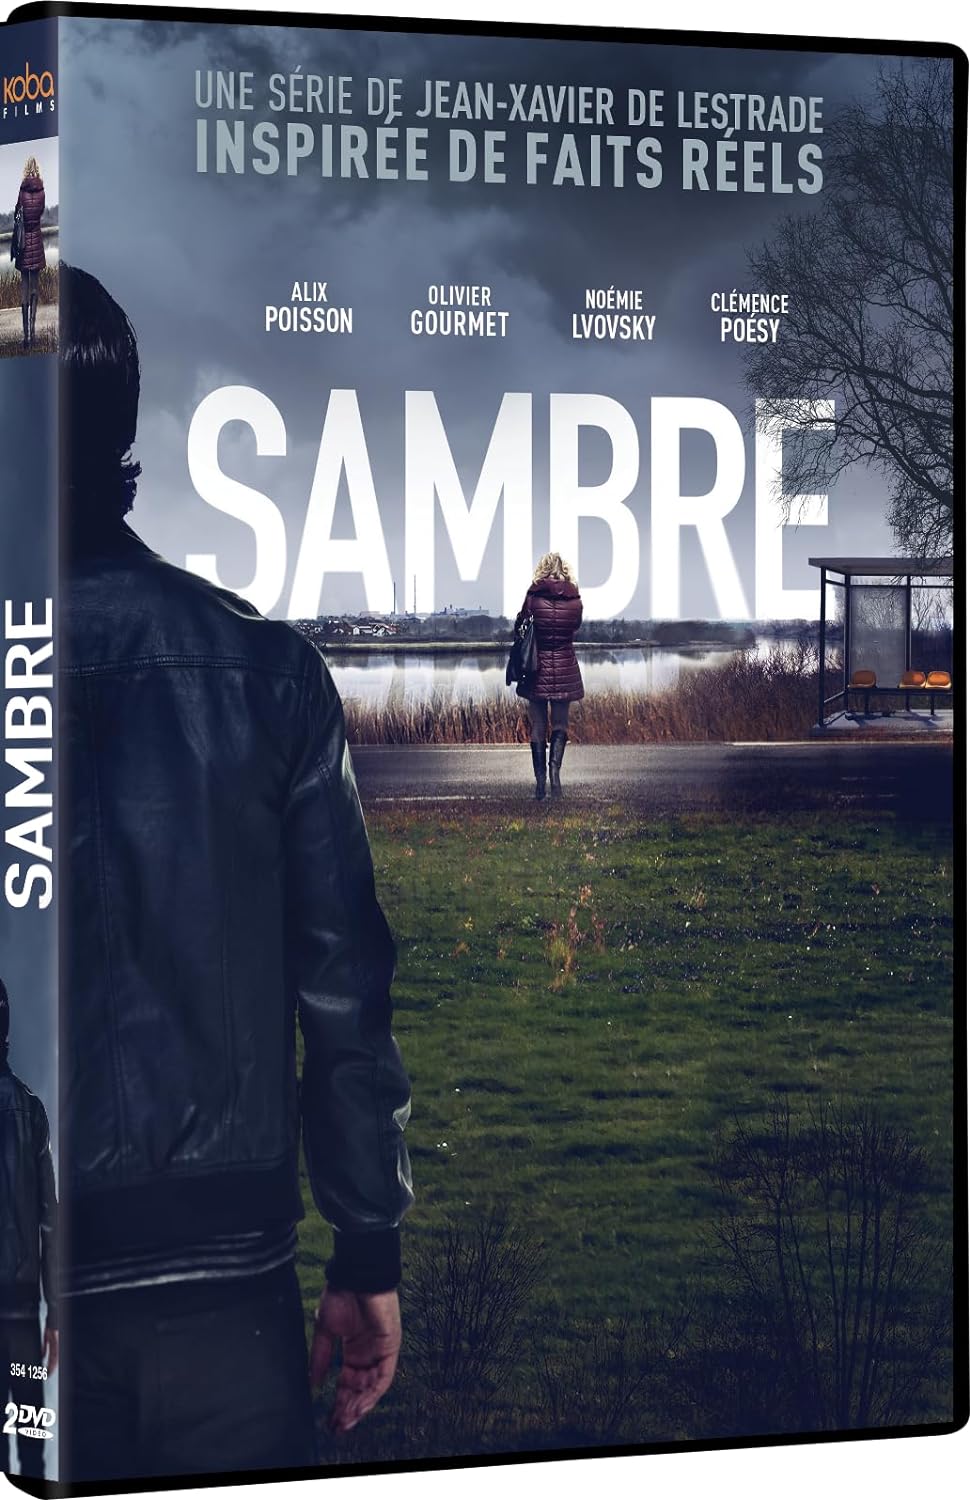 SAMBRE, la mini-série encensée par la critique